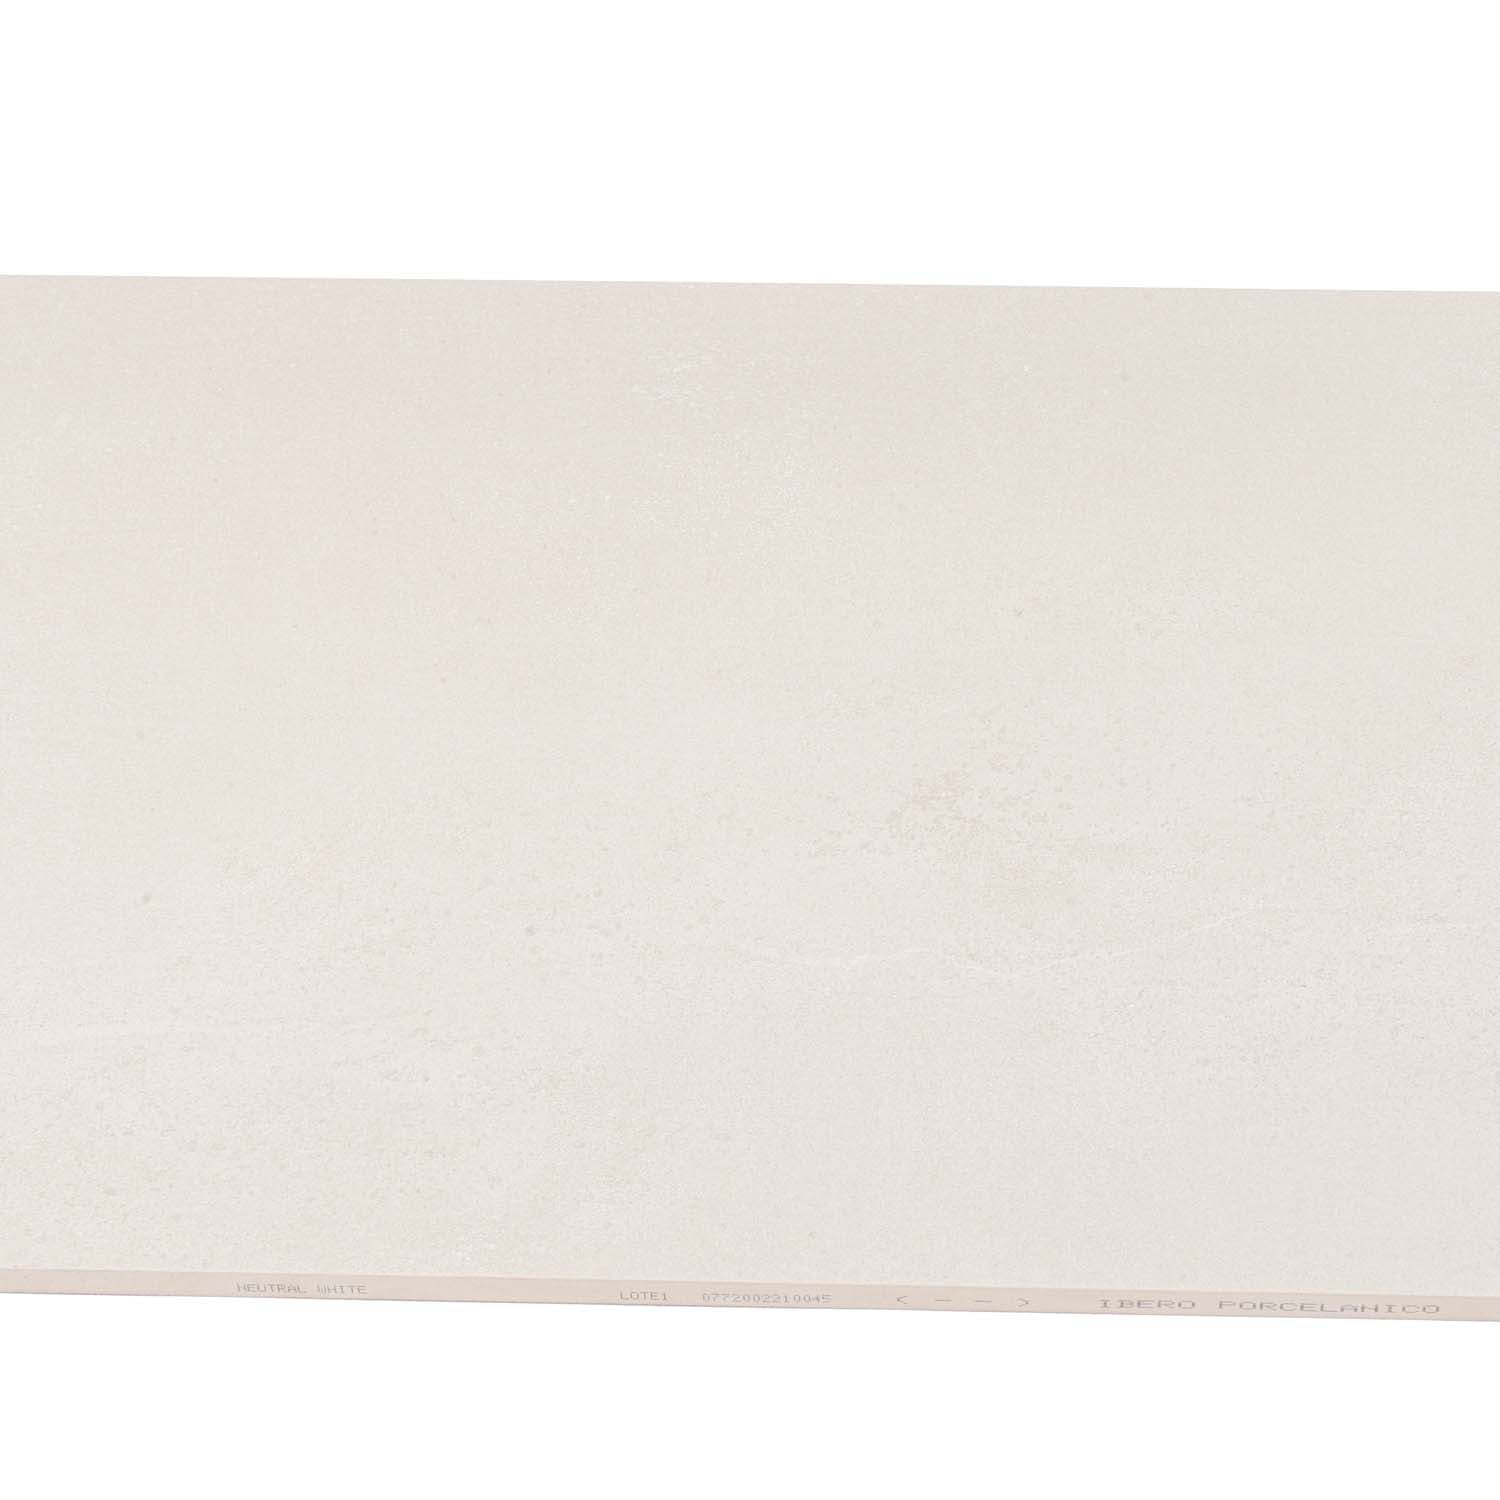 11x39 Bone White Ceramic Floor Tile